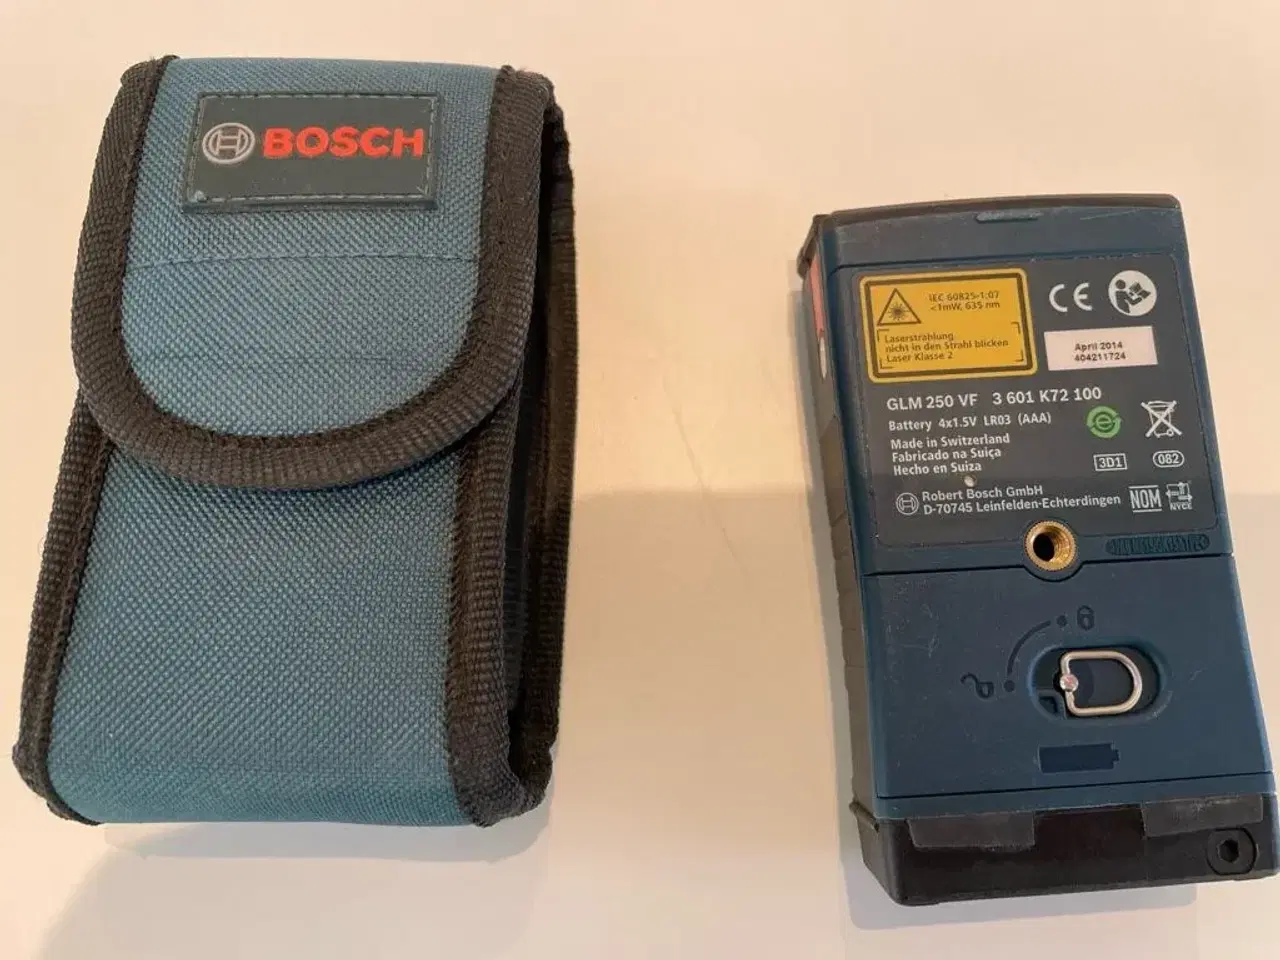 Billede 2 - Afstandsmåler  Bosch GLM 250 VF